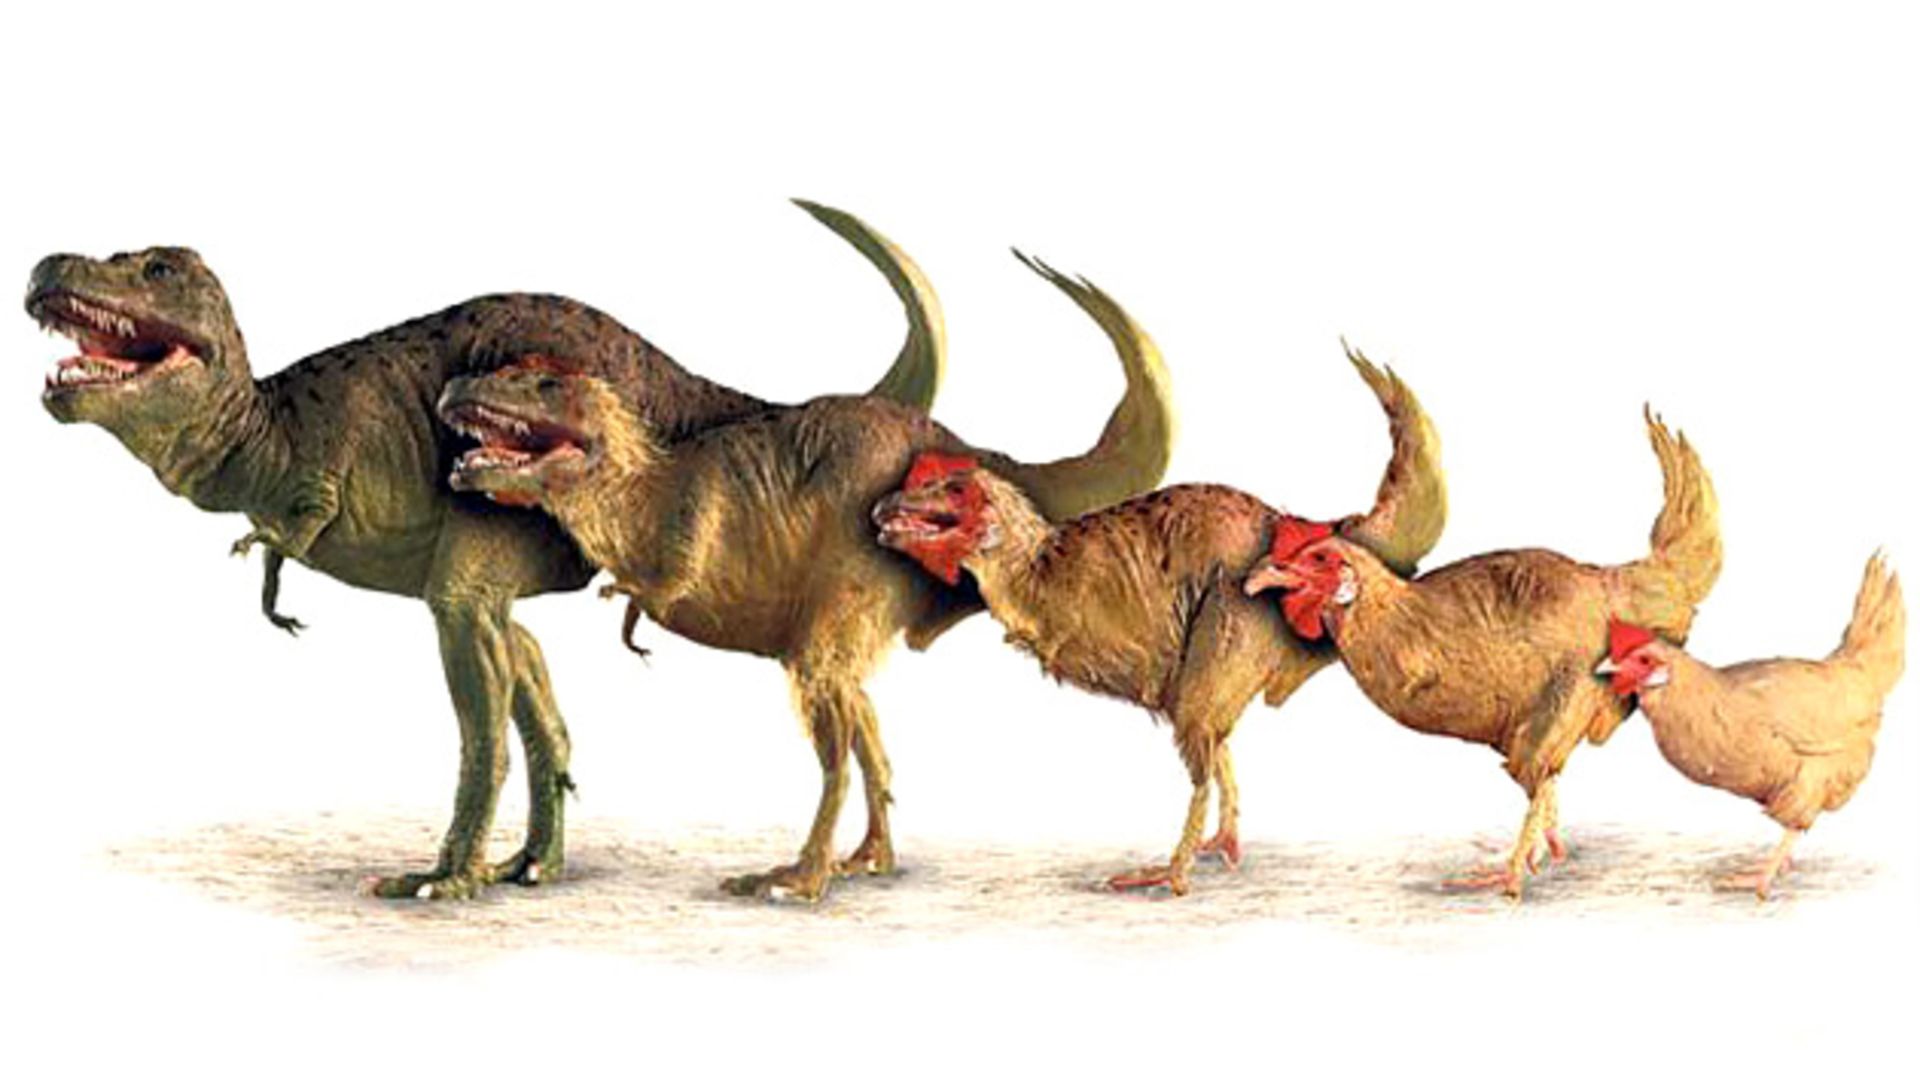 مرجع متخصصين ايران سير تكامل دايناسورها / dinosaurs shrank